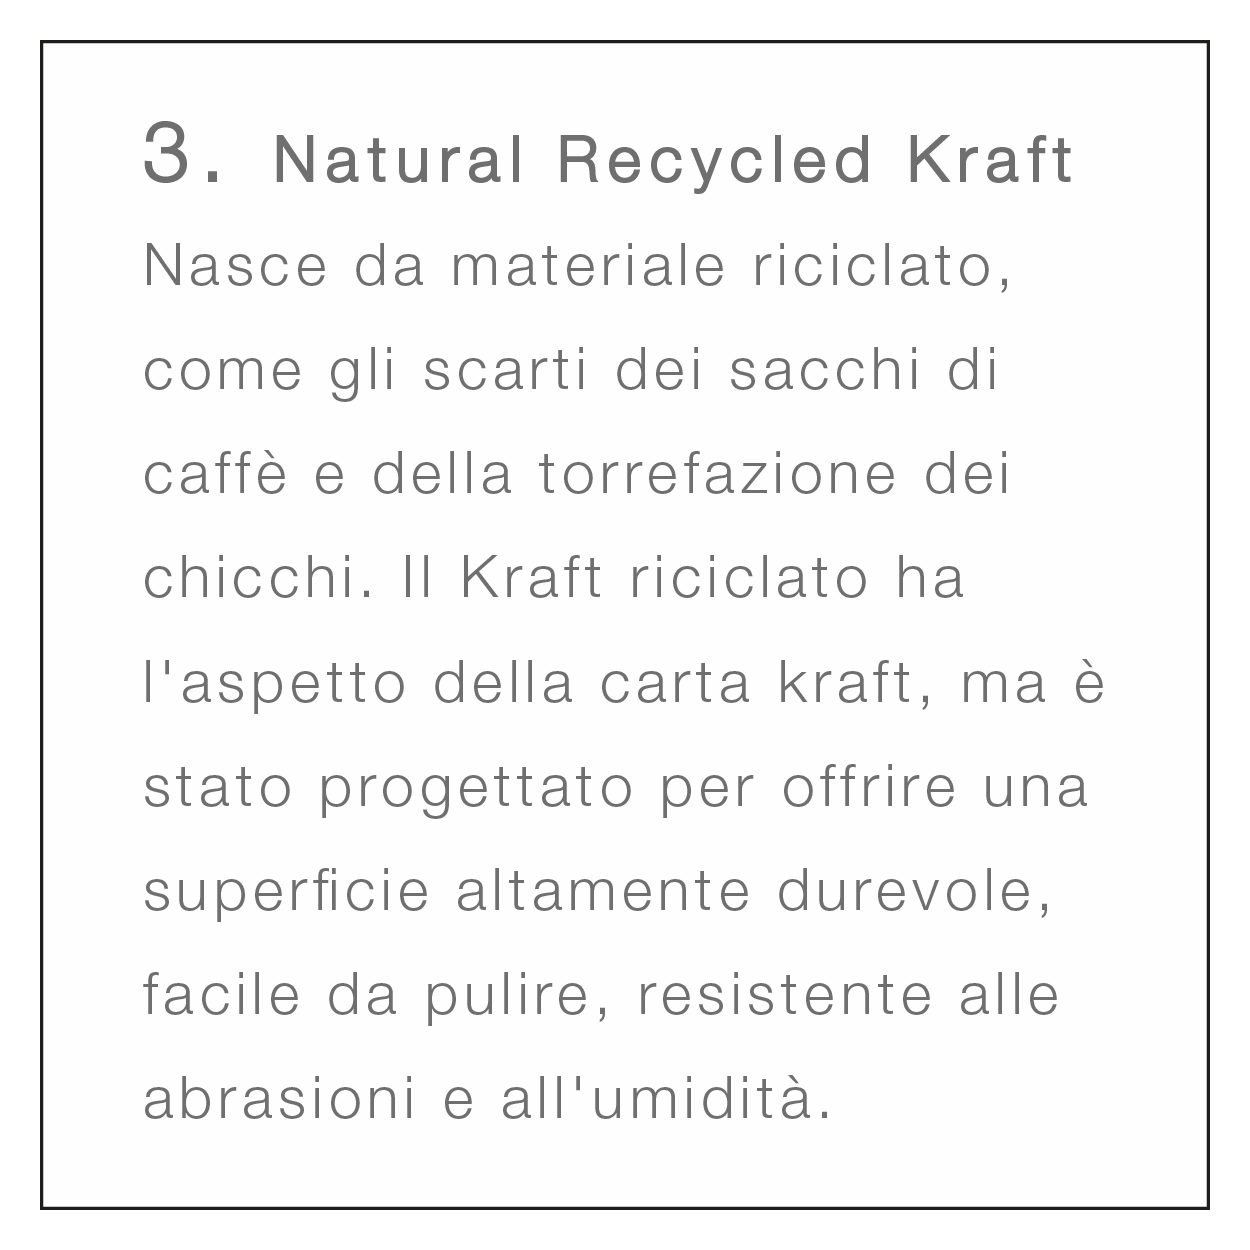 Materioteca Virtuale naturalrecycled descrizione